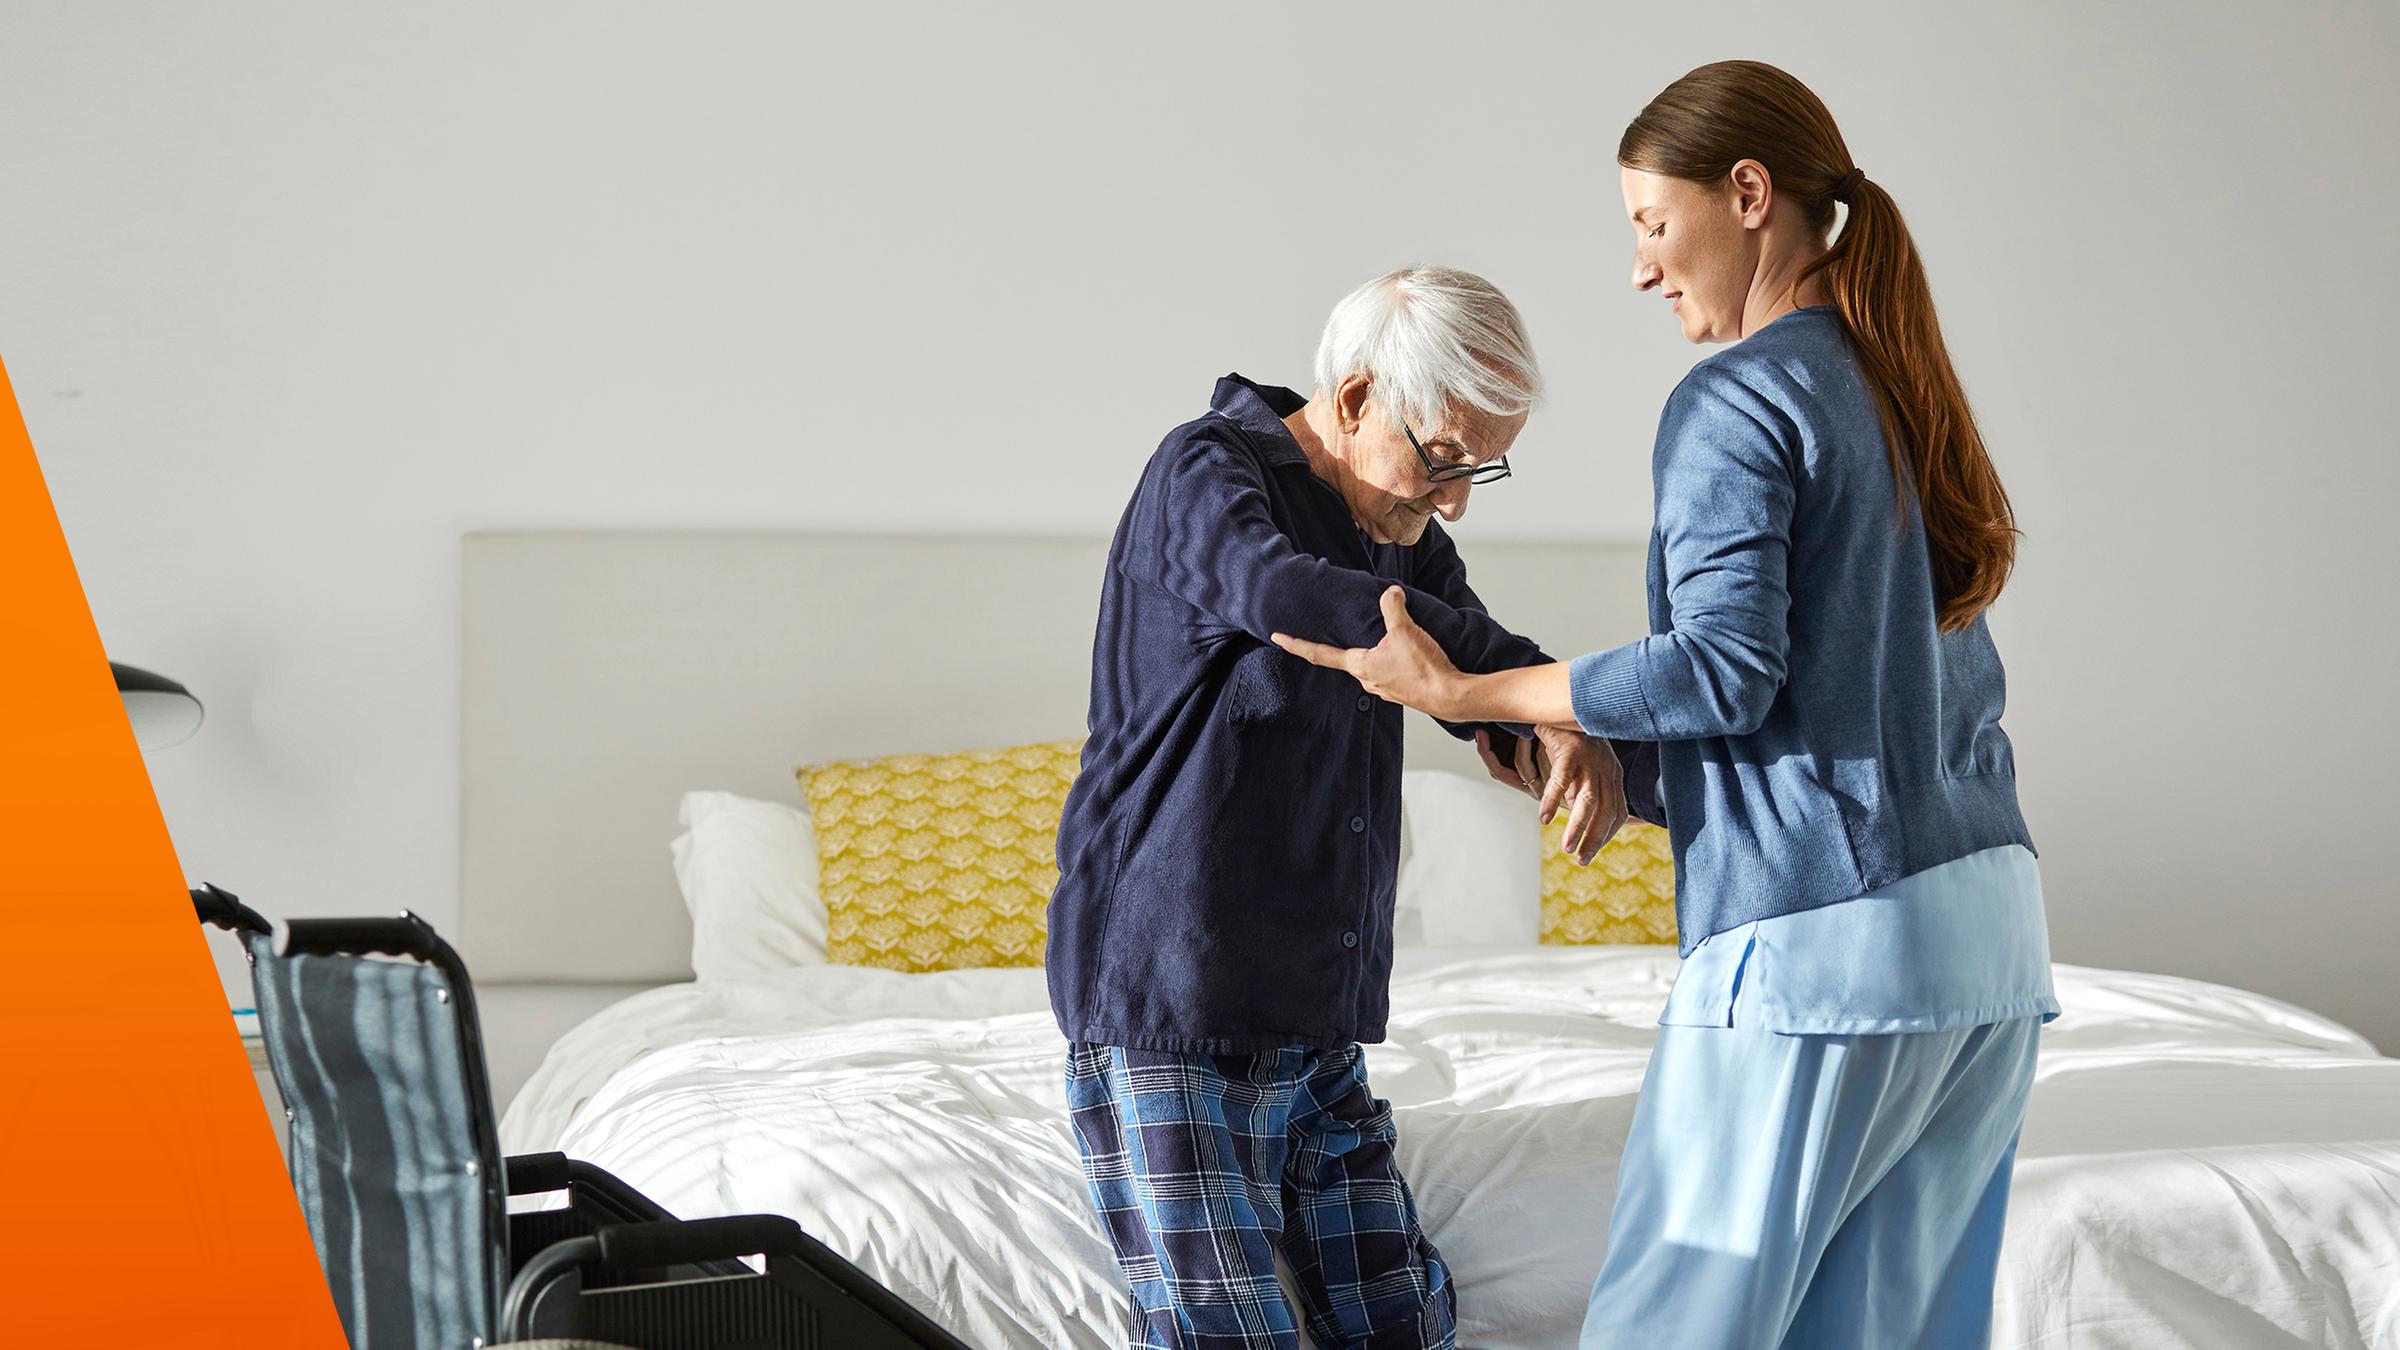 Pflegezusatzversicherung: Junge Frau hilft einer älteren Frau zum Aufstehen